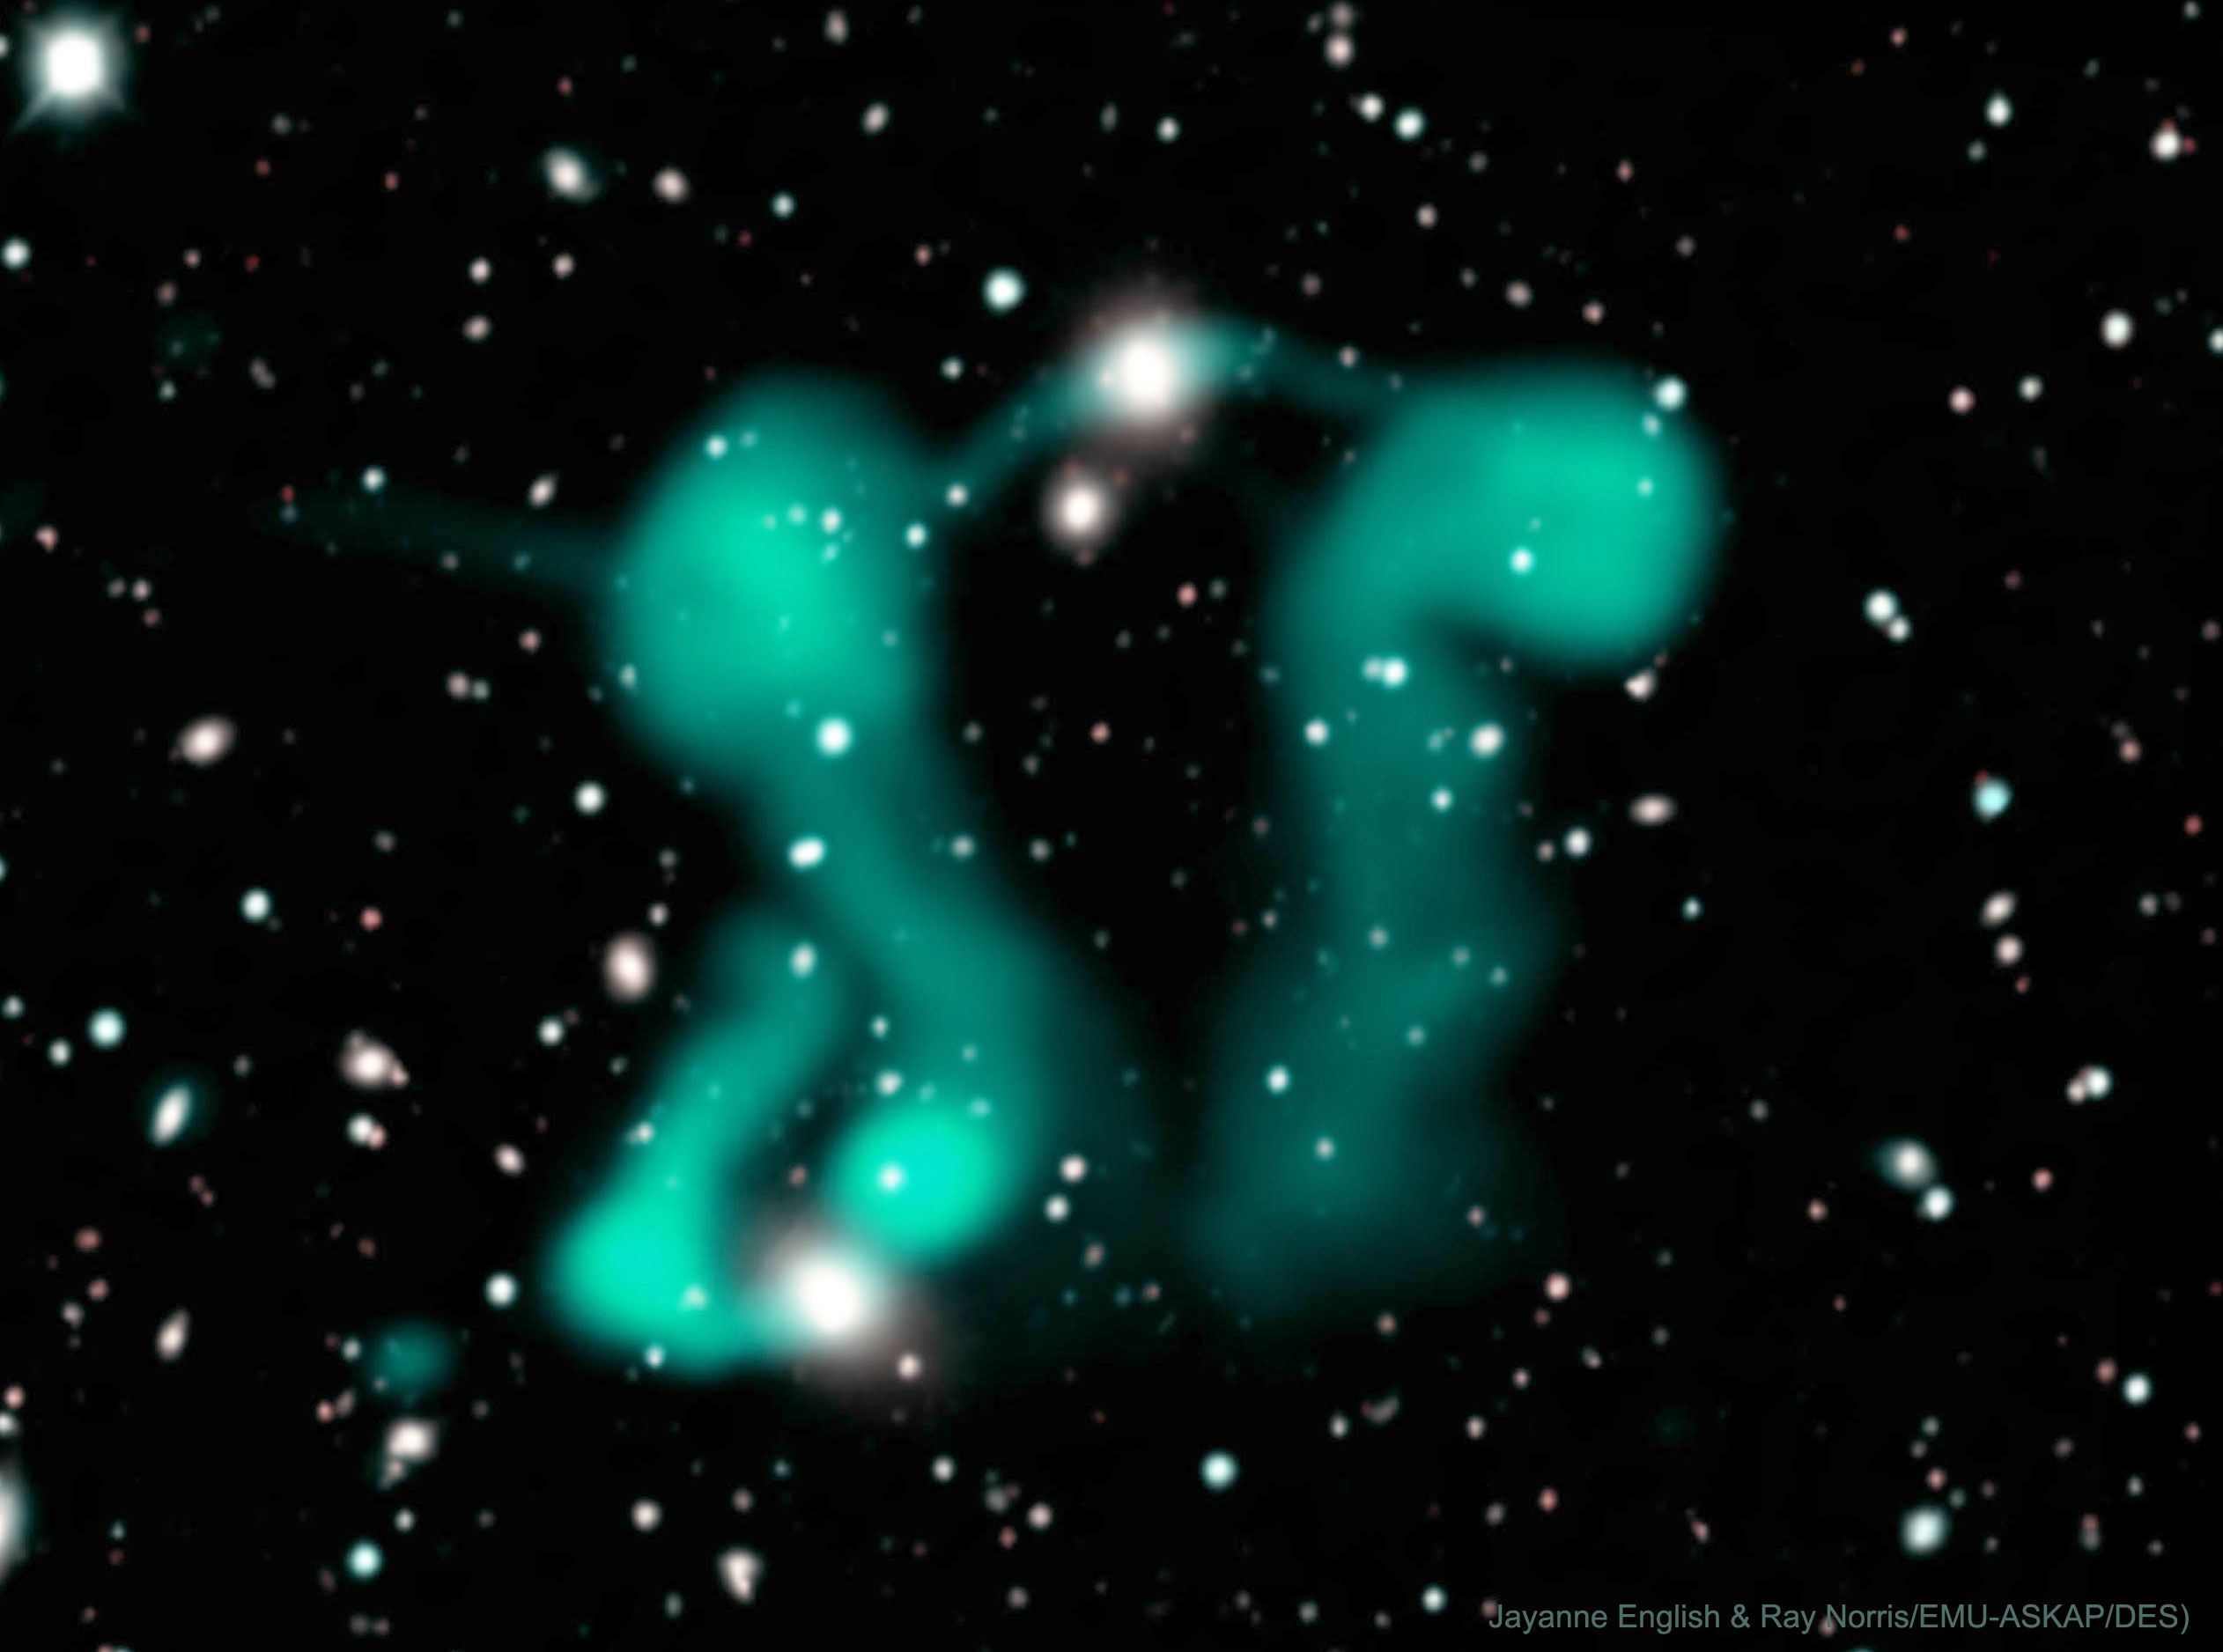 Dans Eden Hayaletler: Aktif Galaksilerden Kıvrımlı Jetler